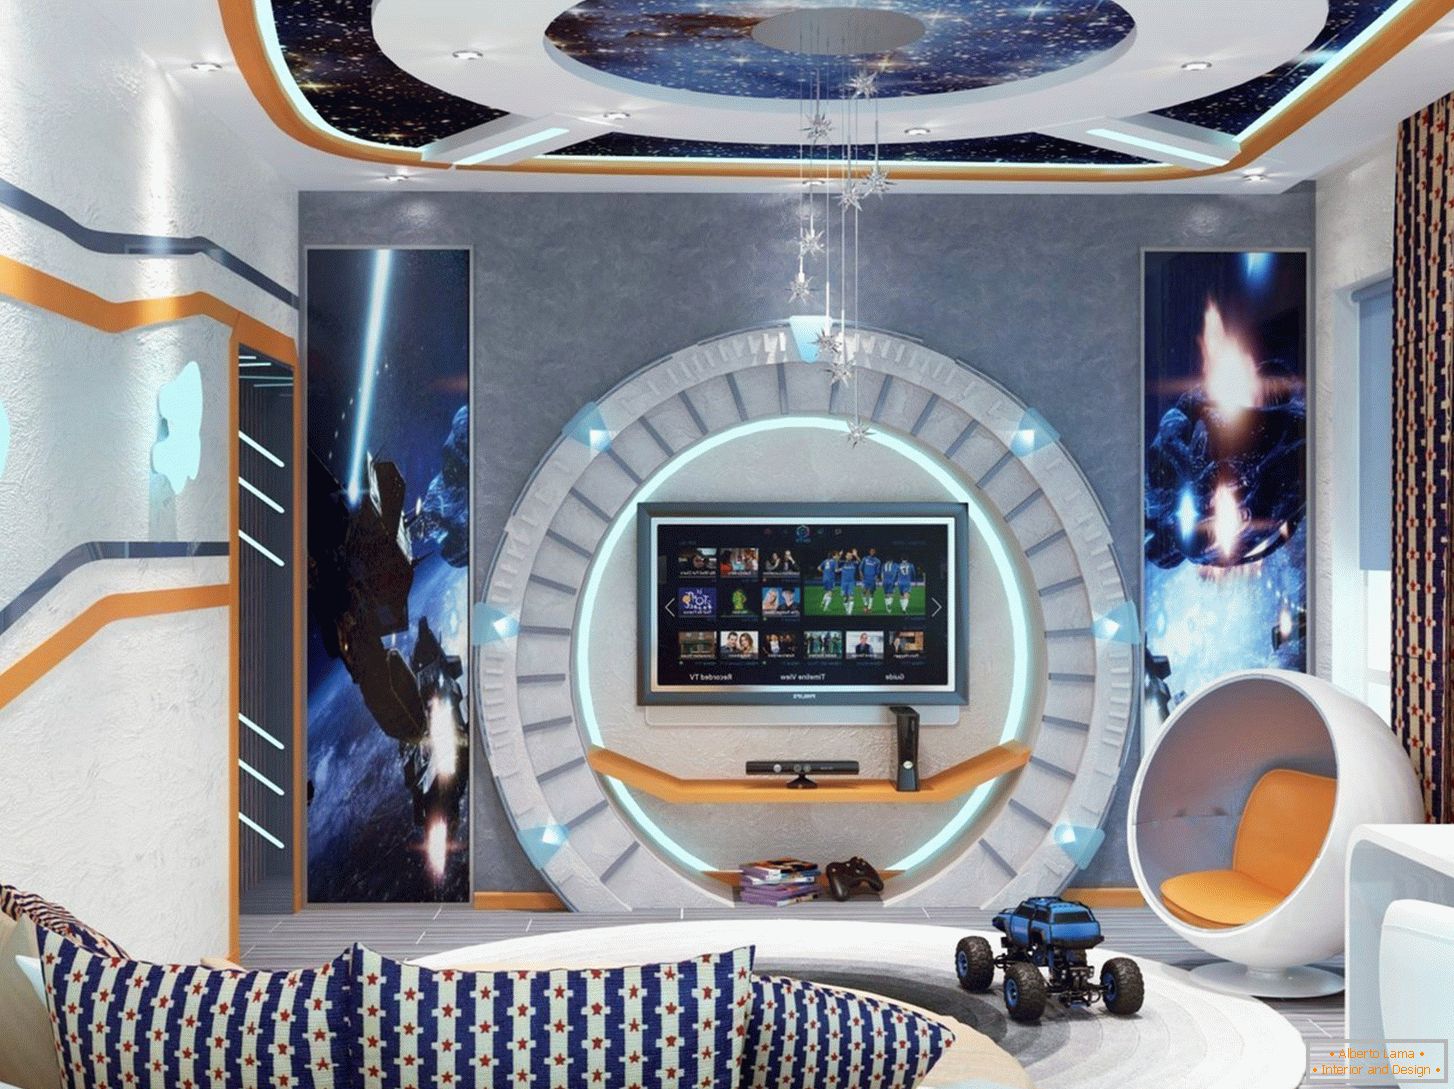 Sala în stilul de navetă spațială